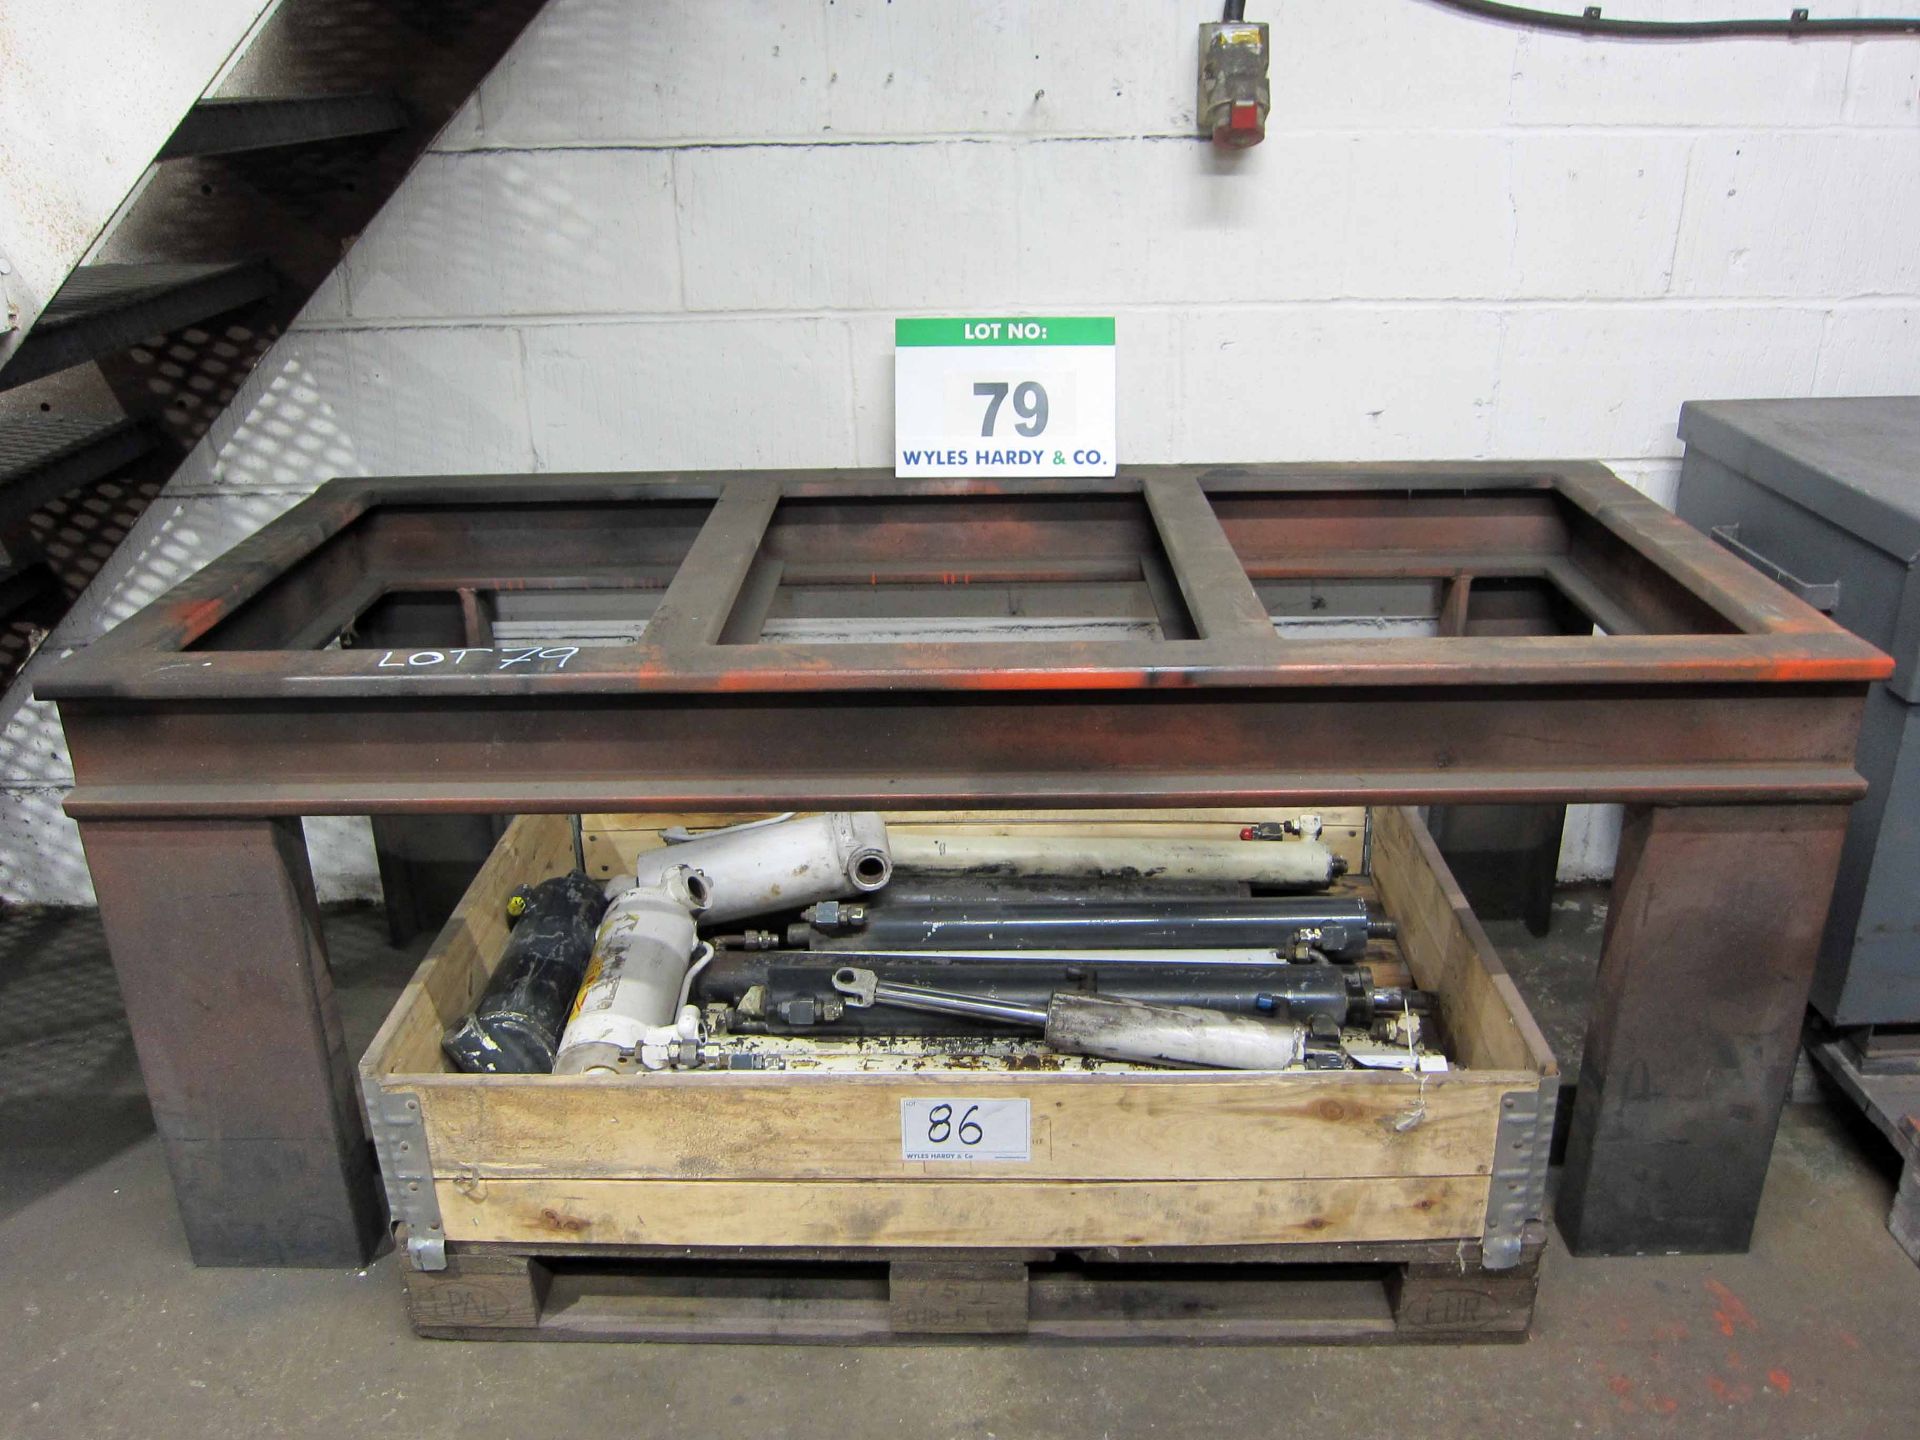 A 1790mm x 790mm Heavy Steel Open Frame Welding Bench